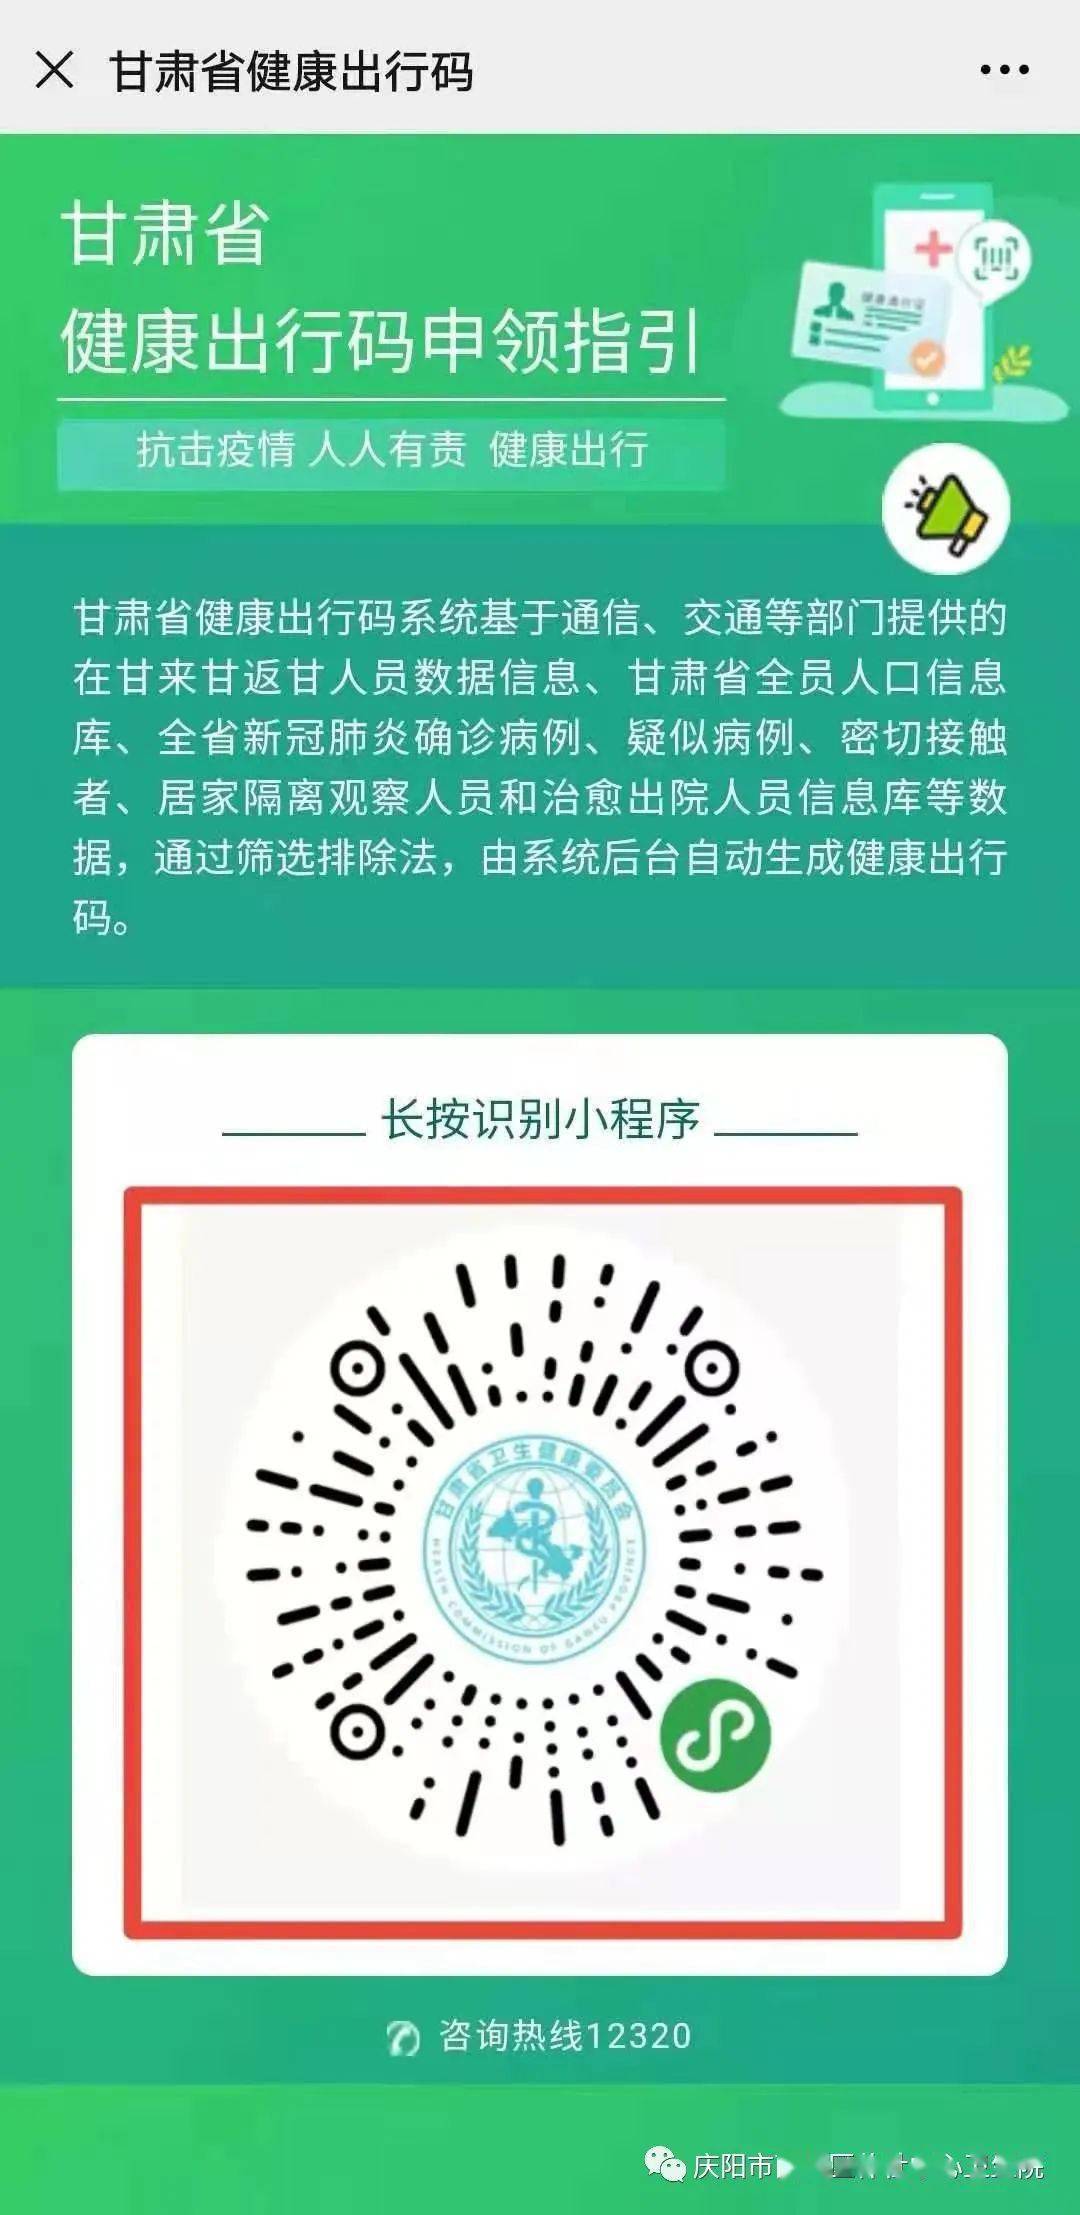 "健康庆阳"微信公众号老年人健康码预约申领流程